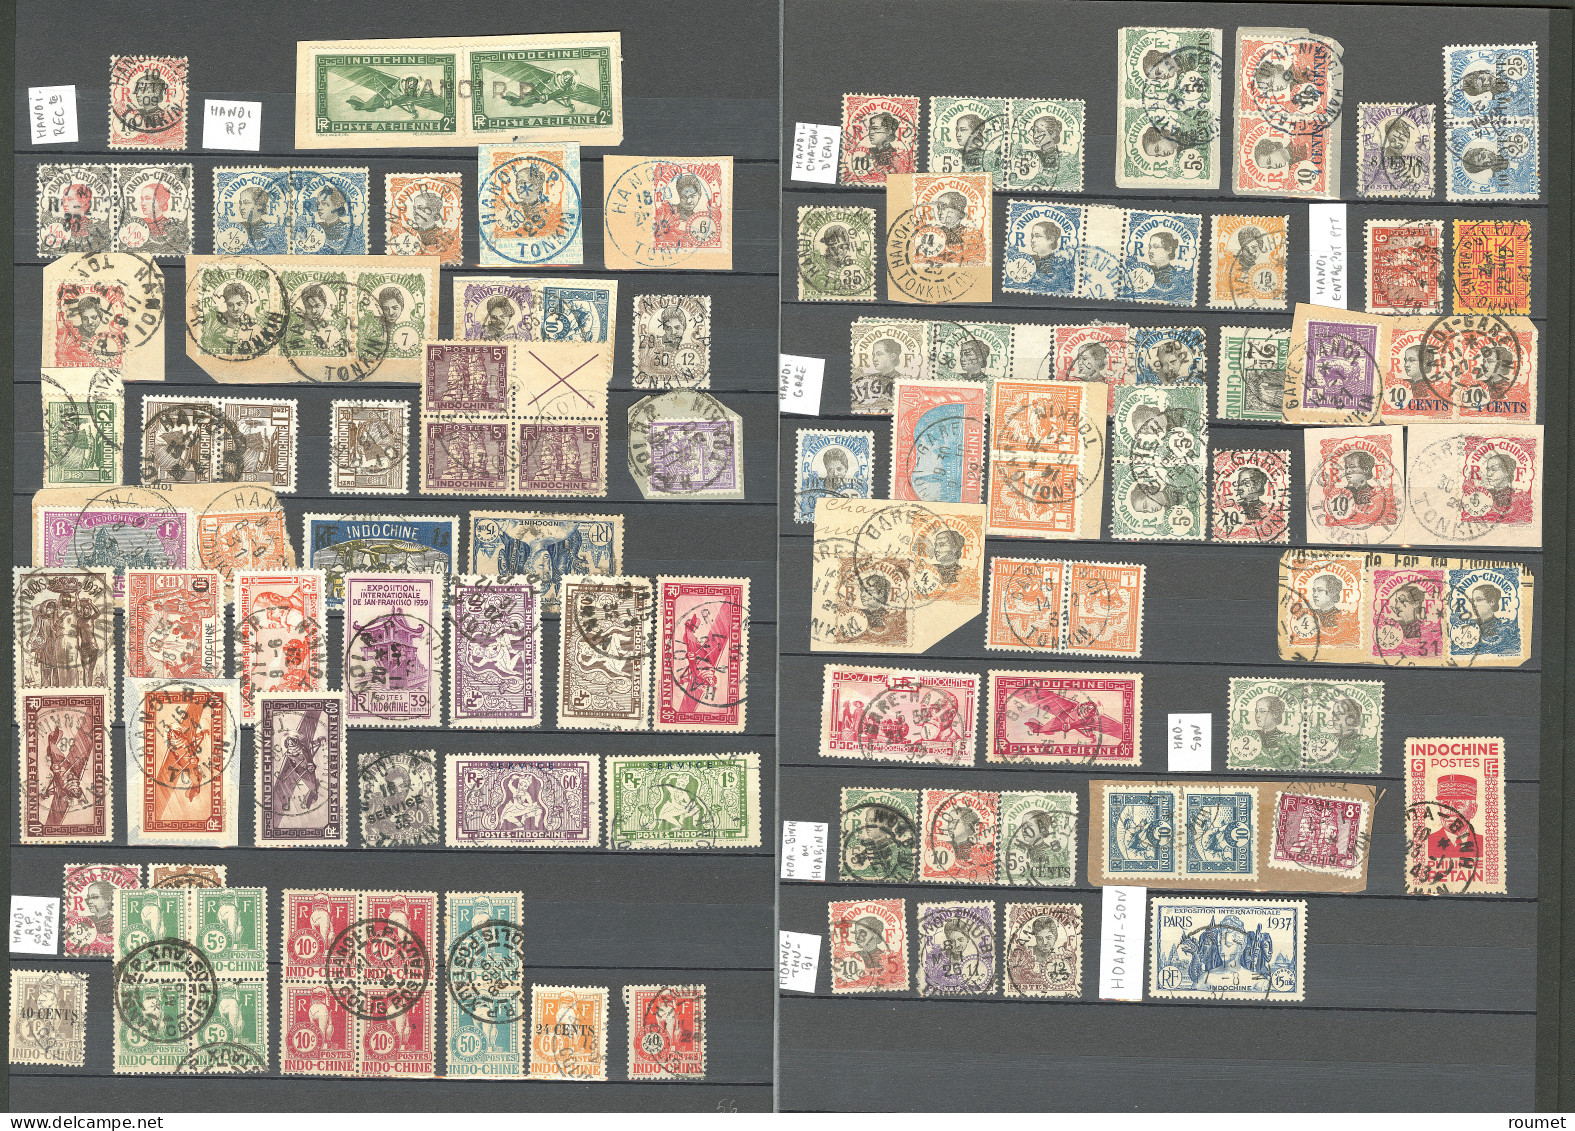 Collection. 1907-1945 (Poste, PA, Taxe), obl choisies de petits bureaux du Tonkin entre Backan et Yen-Minh. - TB ou B